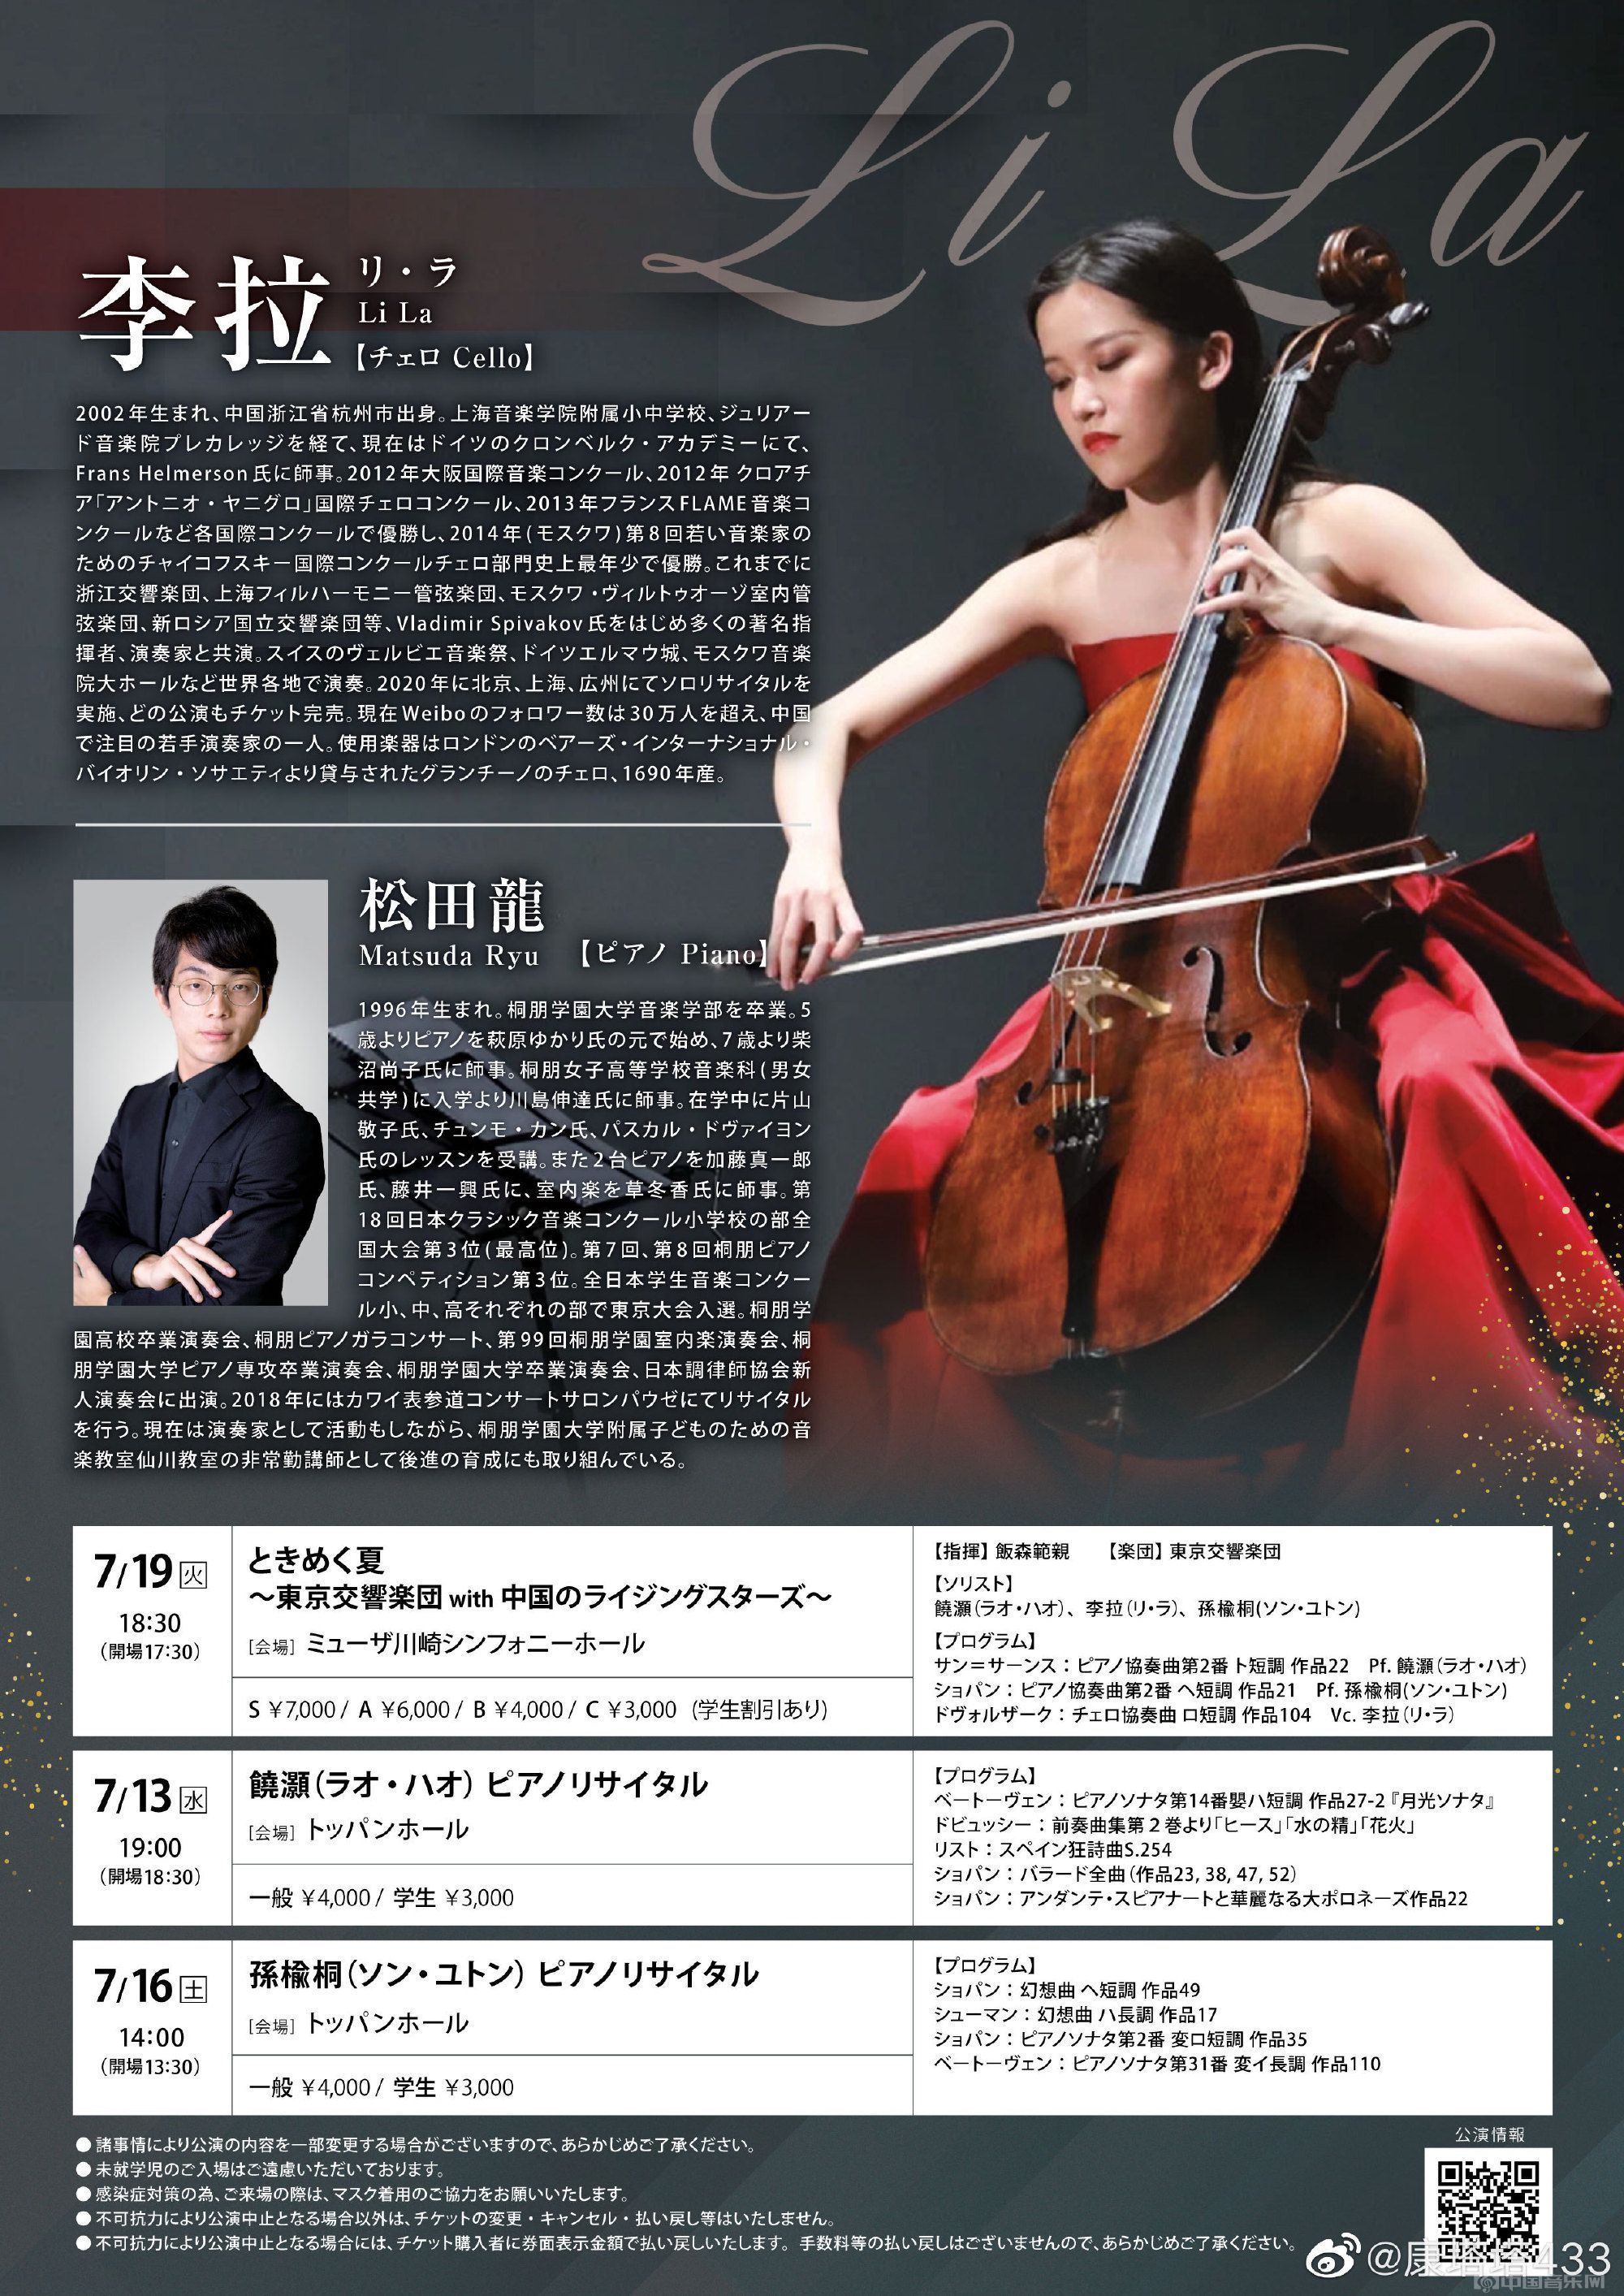 刘芸贝（青年大提琴演奏家）中国音乐网百科 - 个人百科 - 中国音乐网